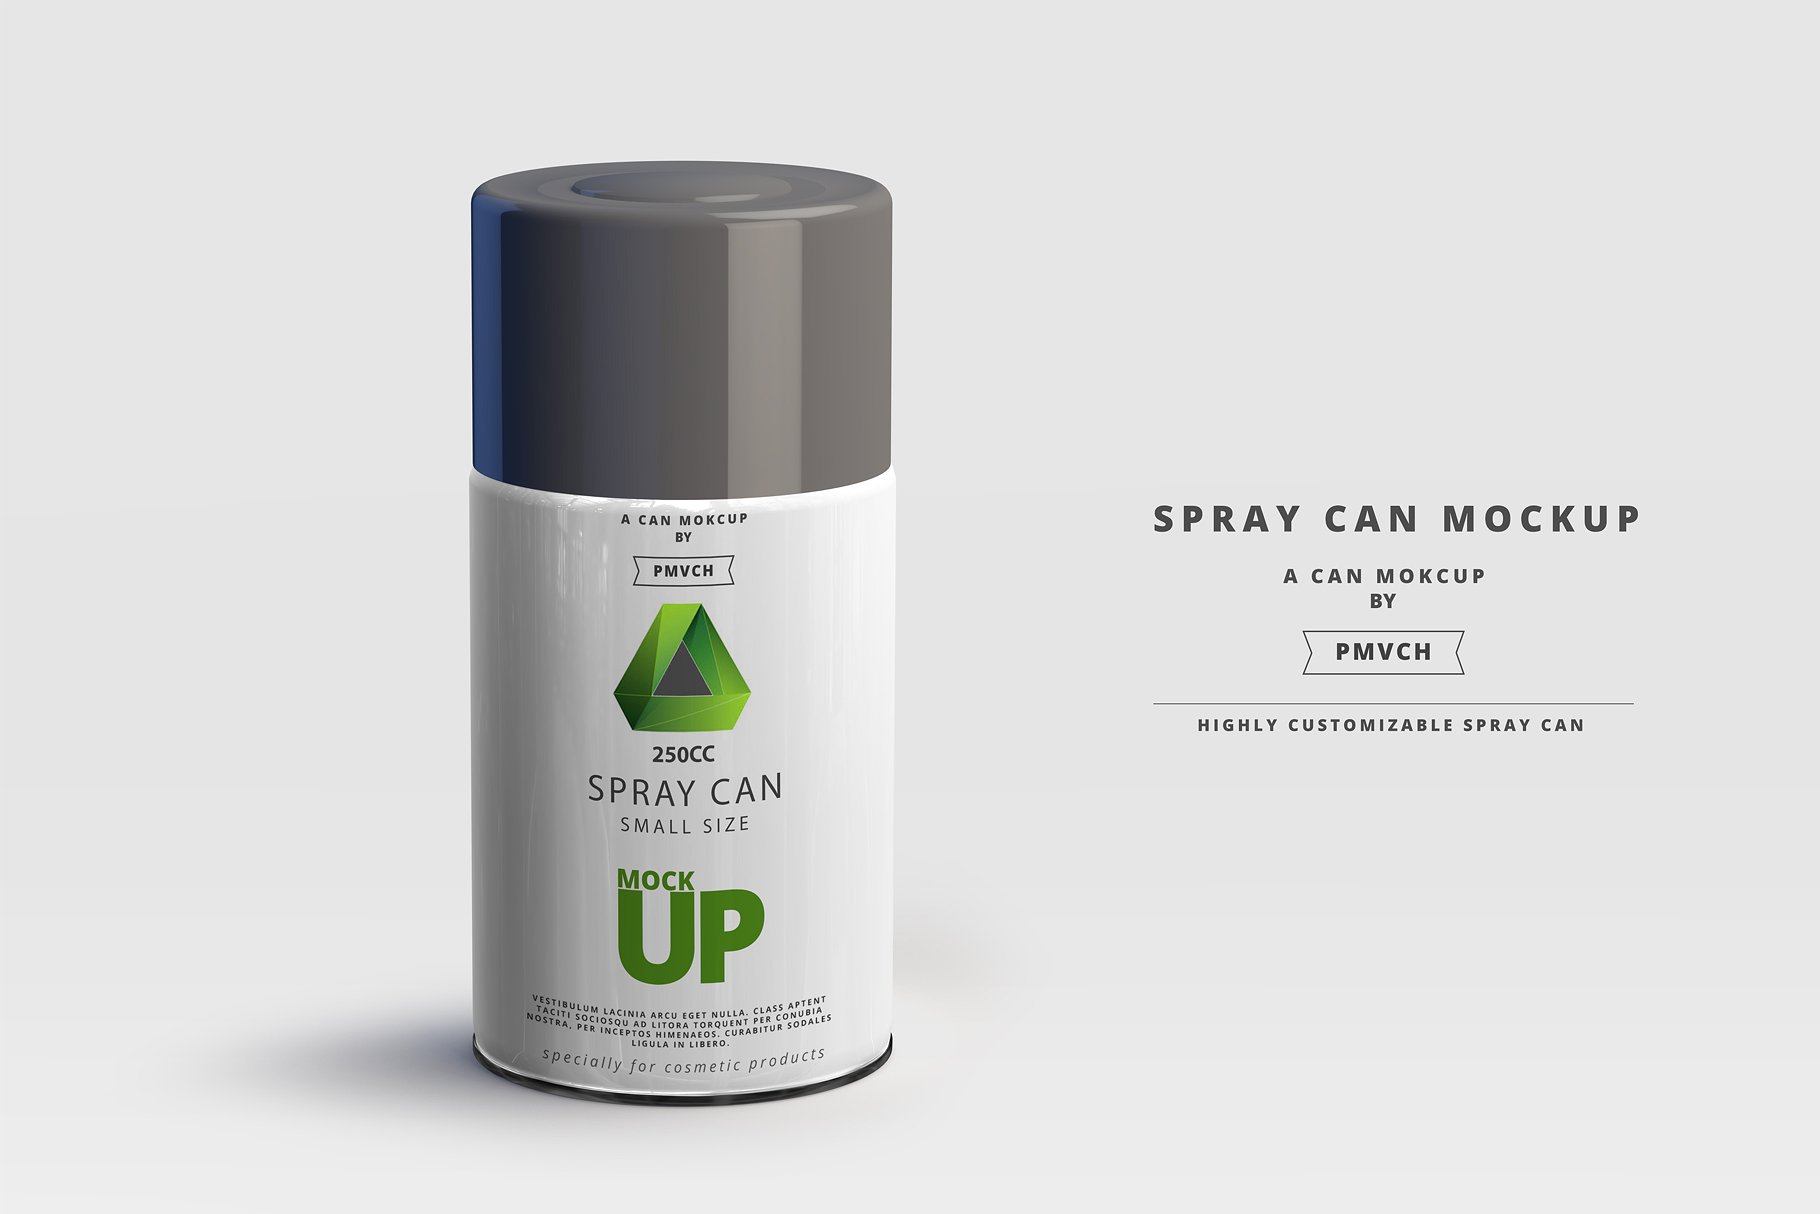 小型喷雾罐实体模型 Spray Can Mockup – Small Size插图